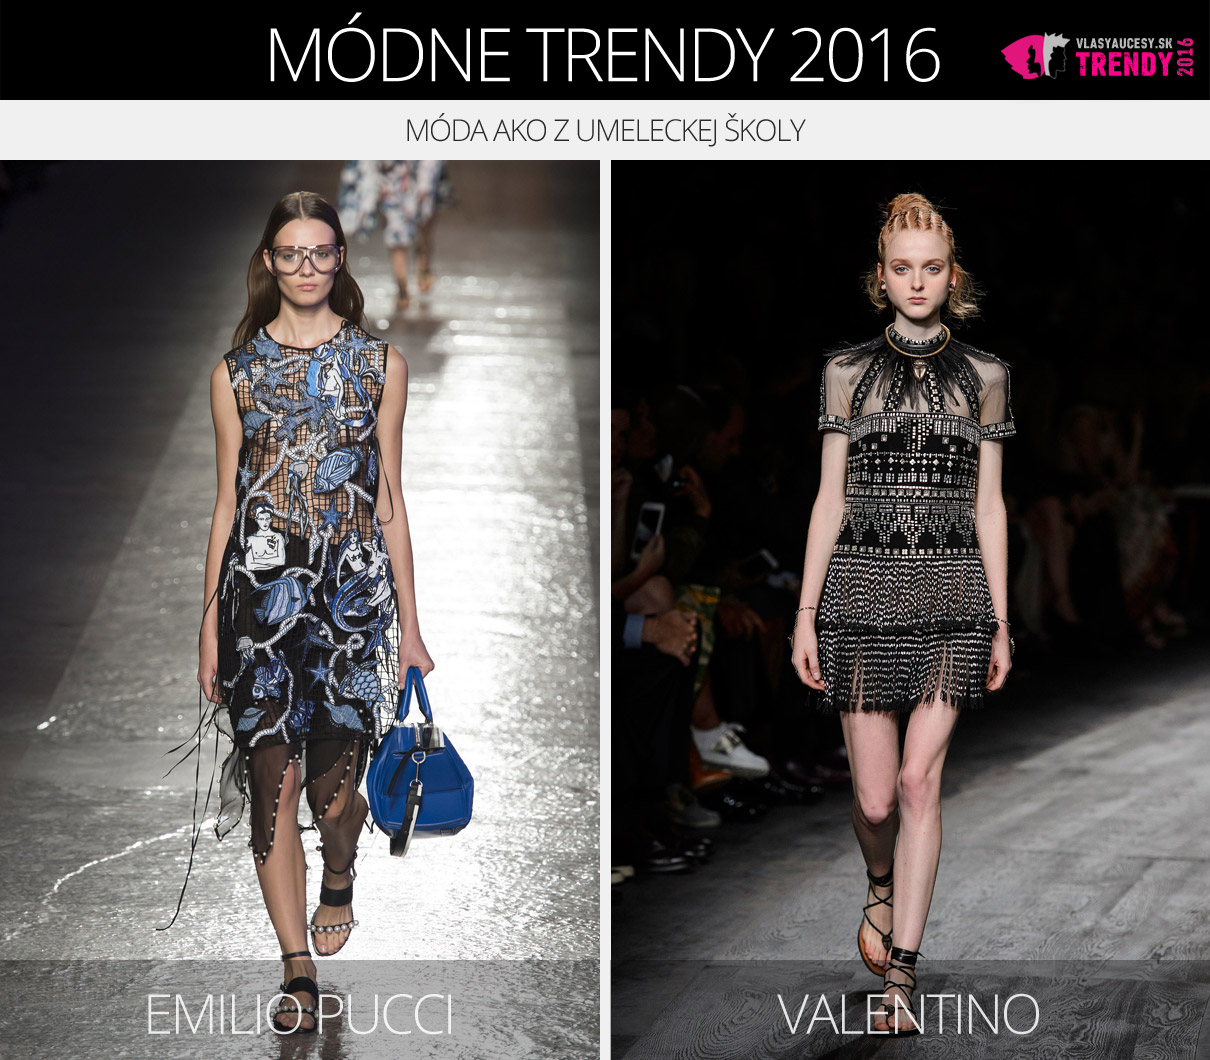 Módne trendy 2016 – móda ako z umeleckej školy. (Zľava: Emilio Pucci a Valentino.)